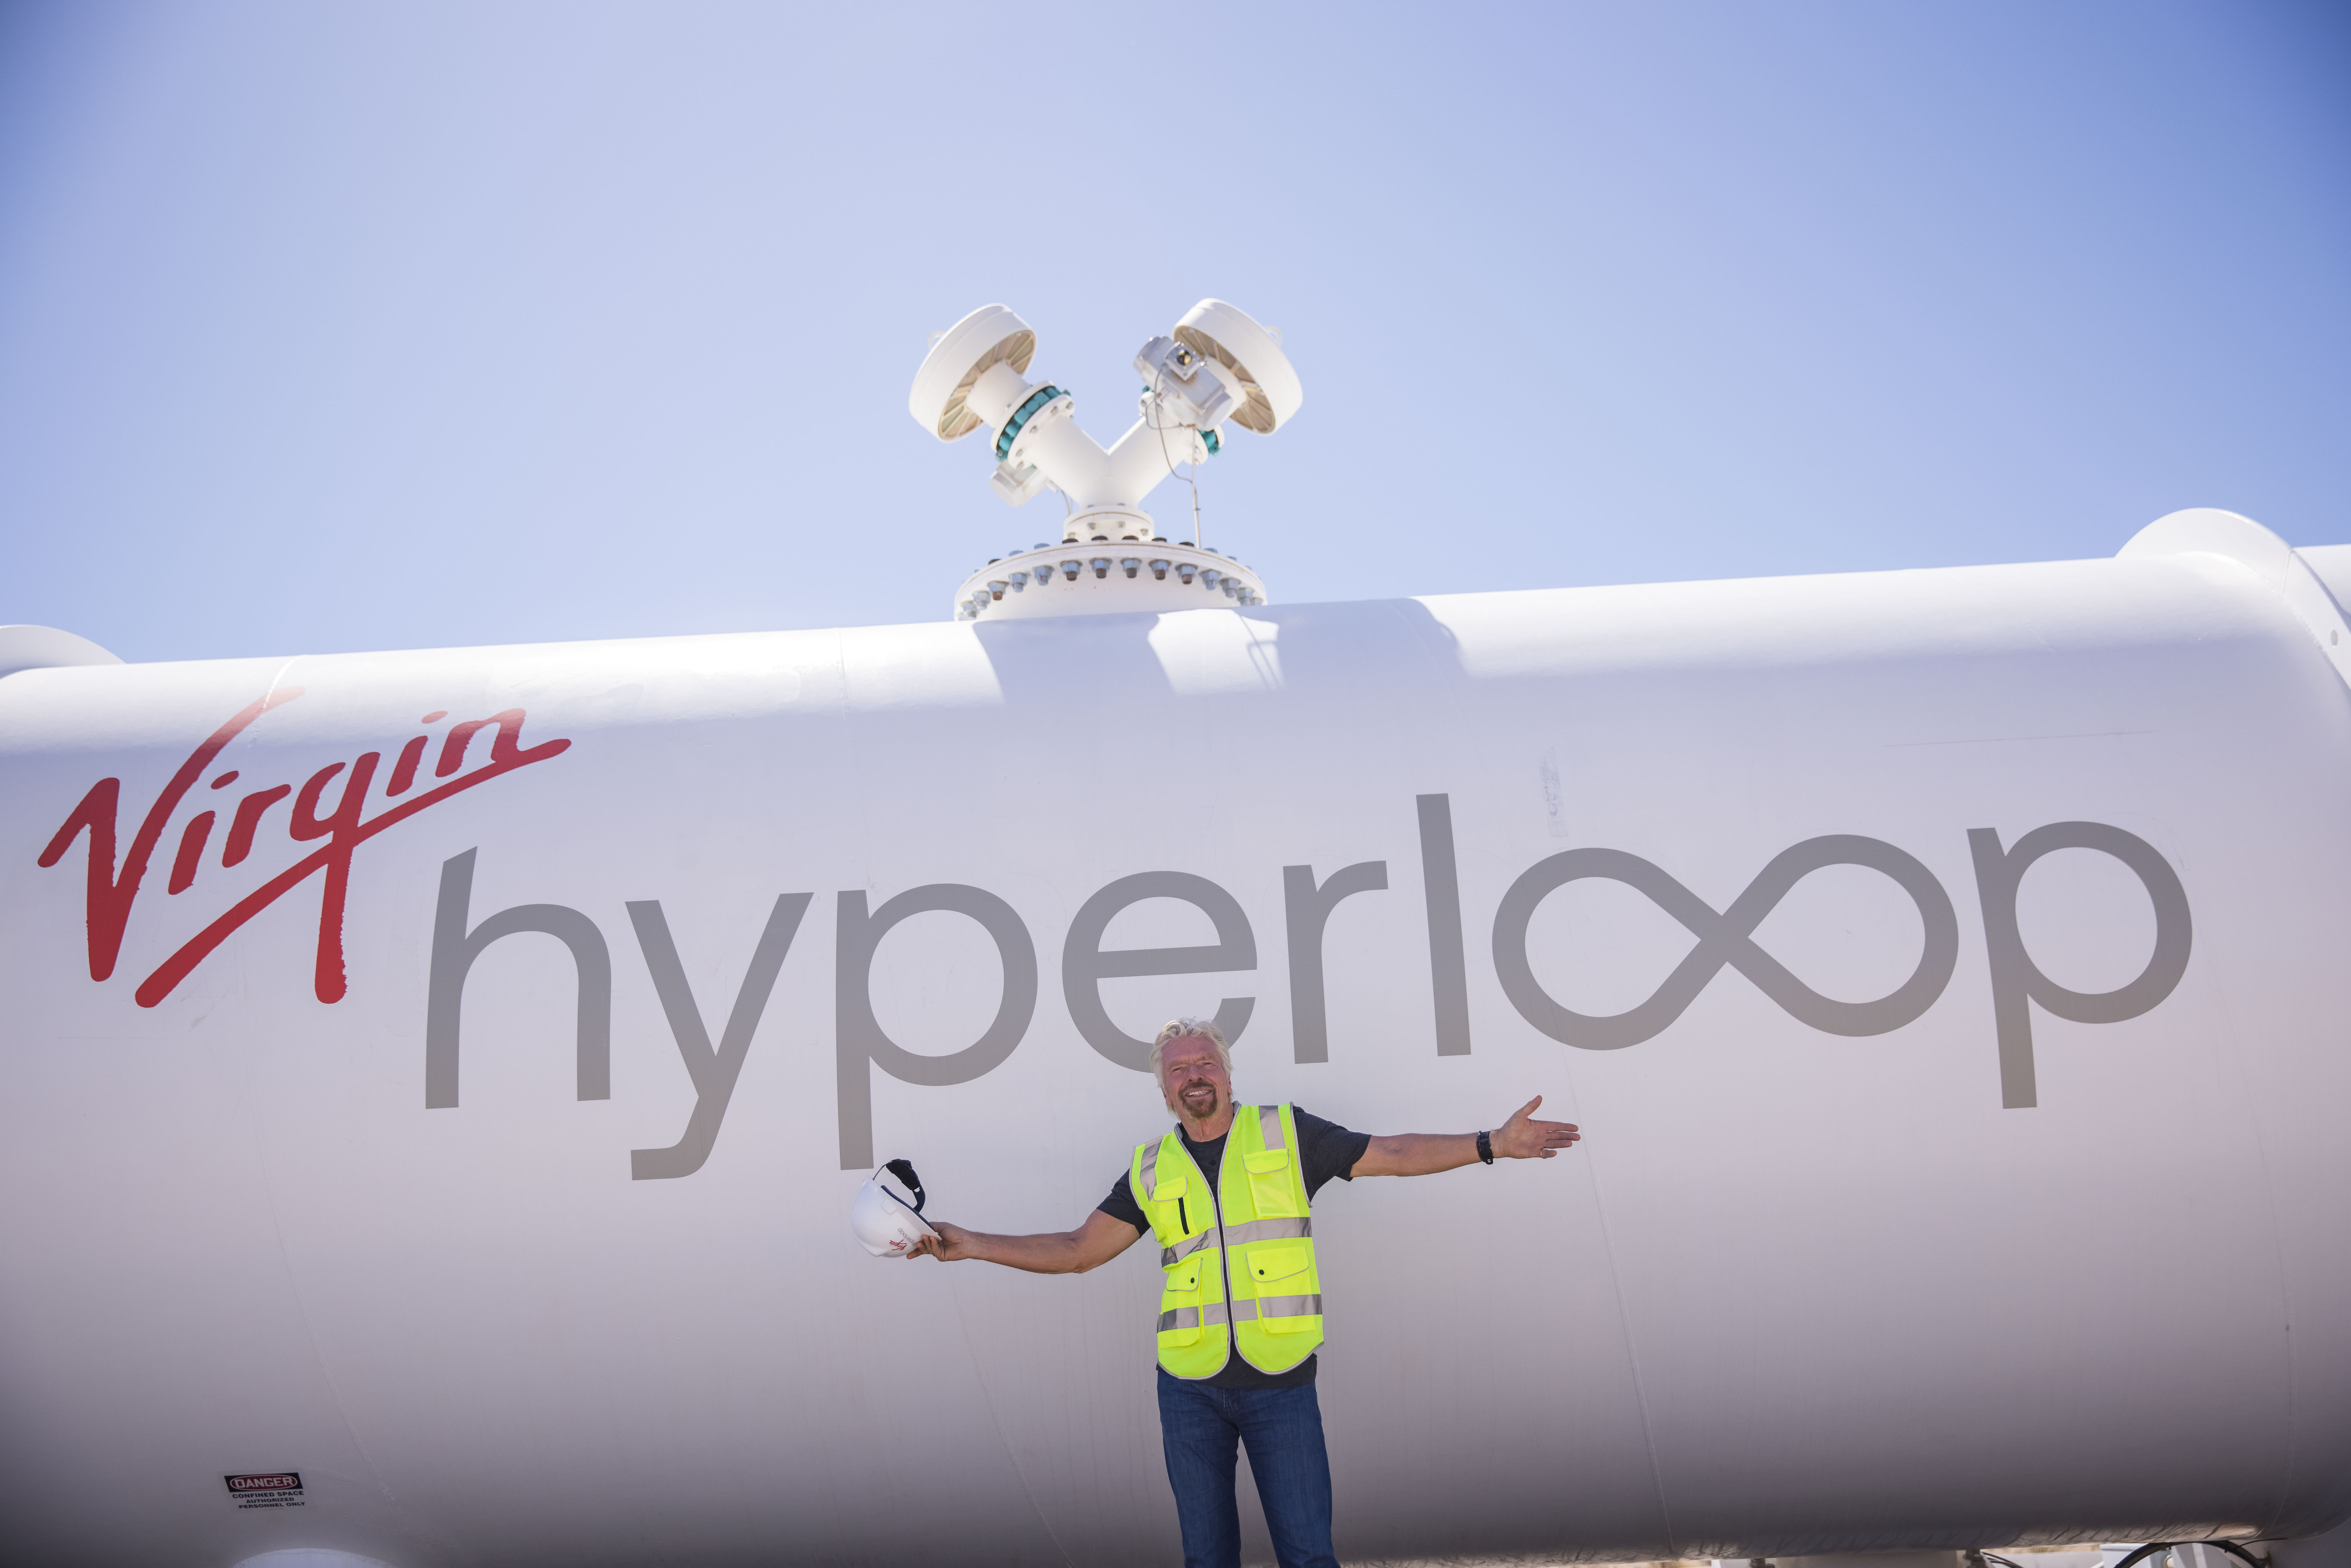 Richard Branson smiling in front of Virgin Hyperloop's XP-2 vehicle